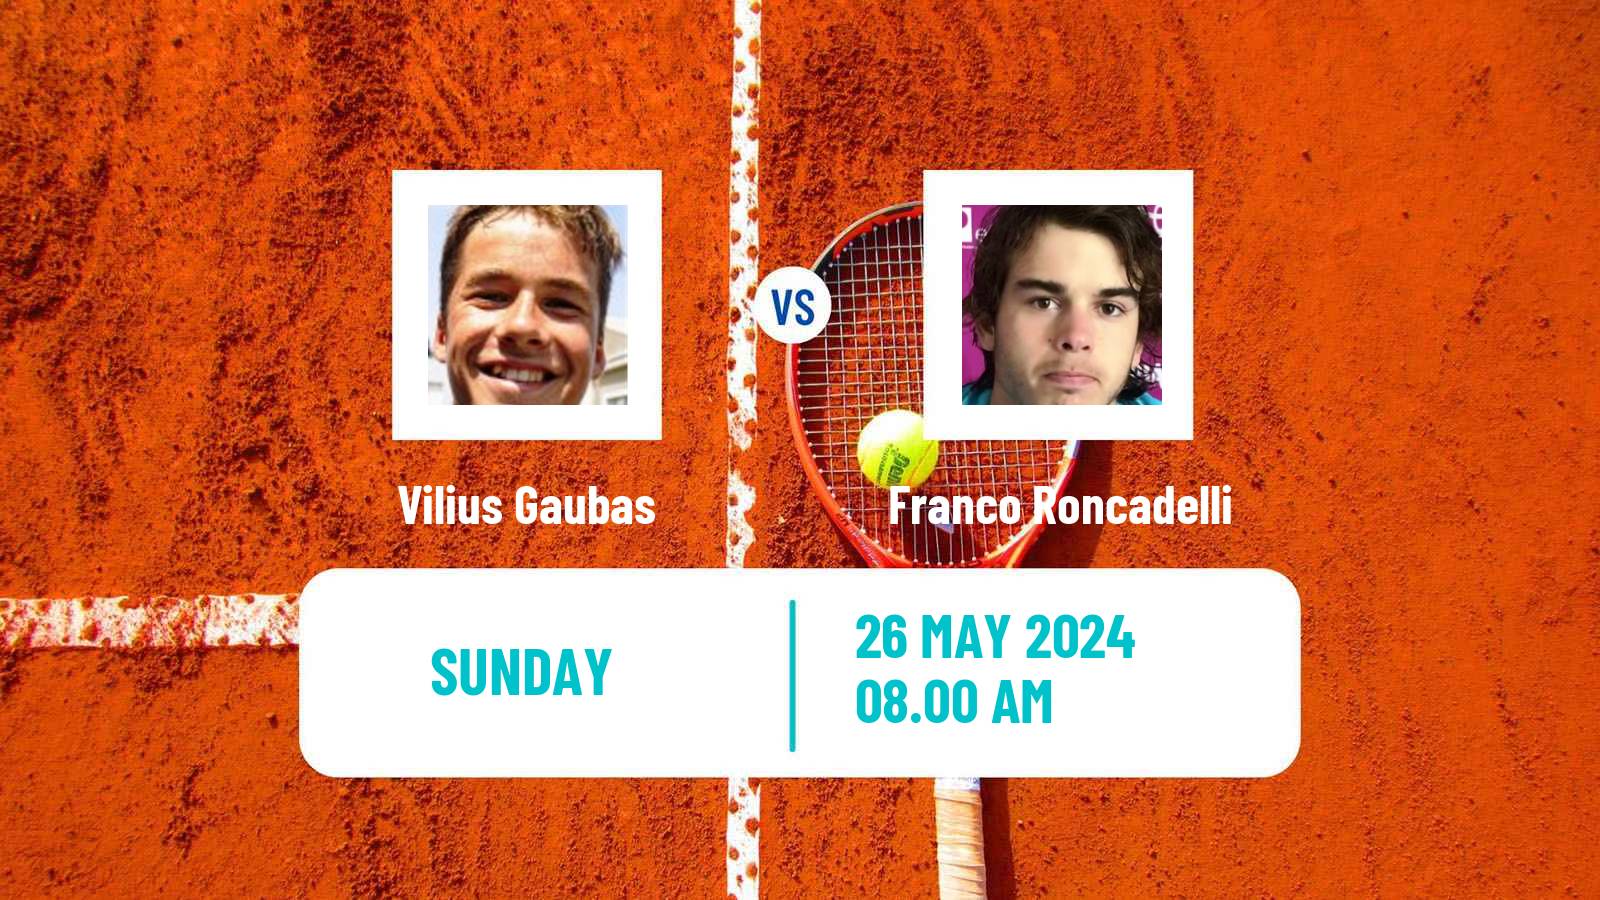 Tennis Vicenza Challenger Men Vilius Gaubas - Franco Roncadelli